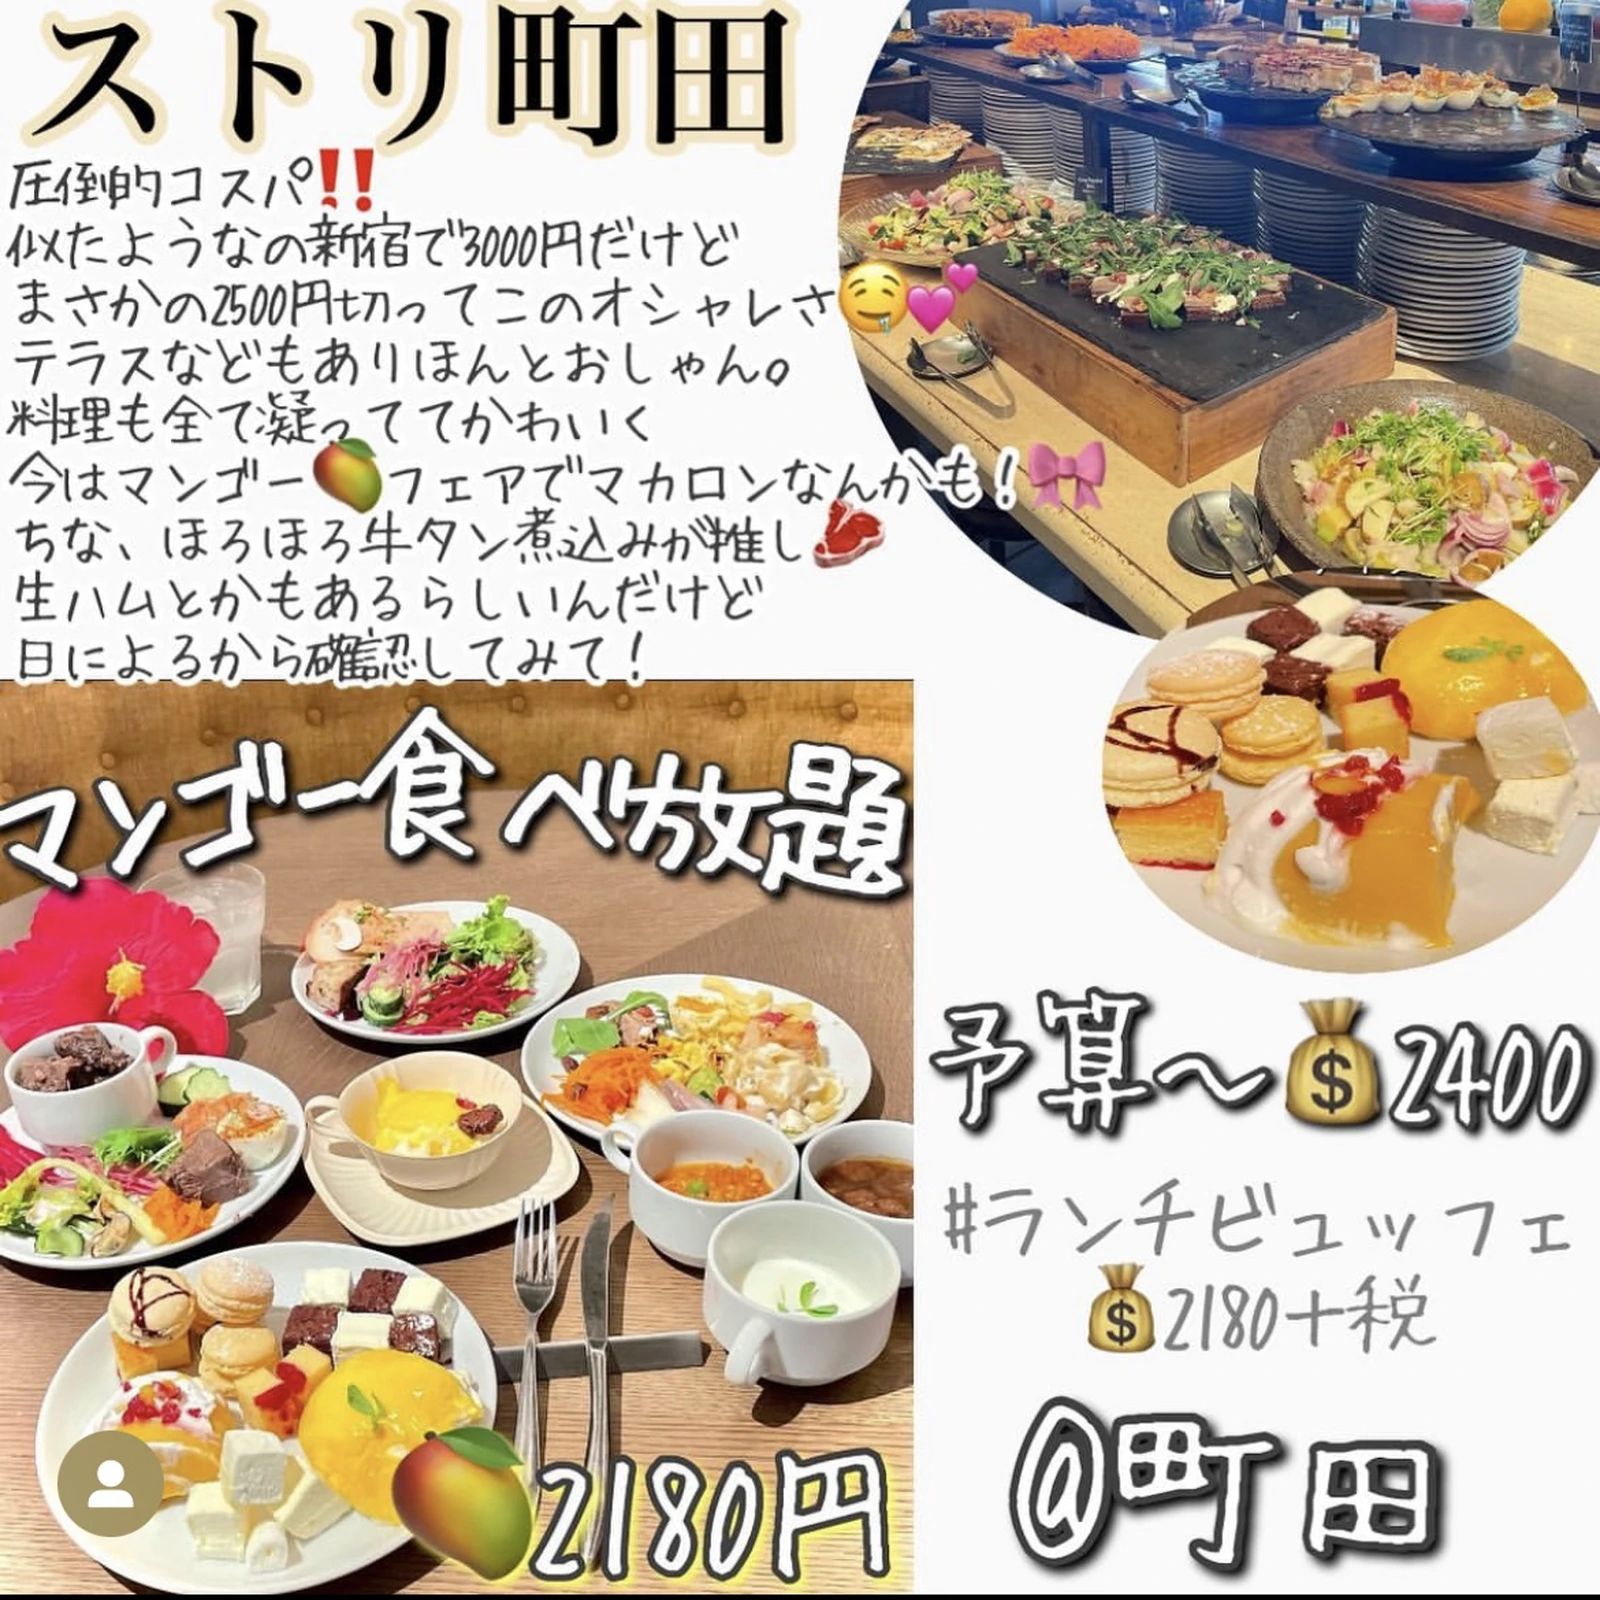 記念日に ちょっぴり贅沢な食べ放題まとめ シェアハピ 東京コスパグルメが投稿したフォトブック Lemon8